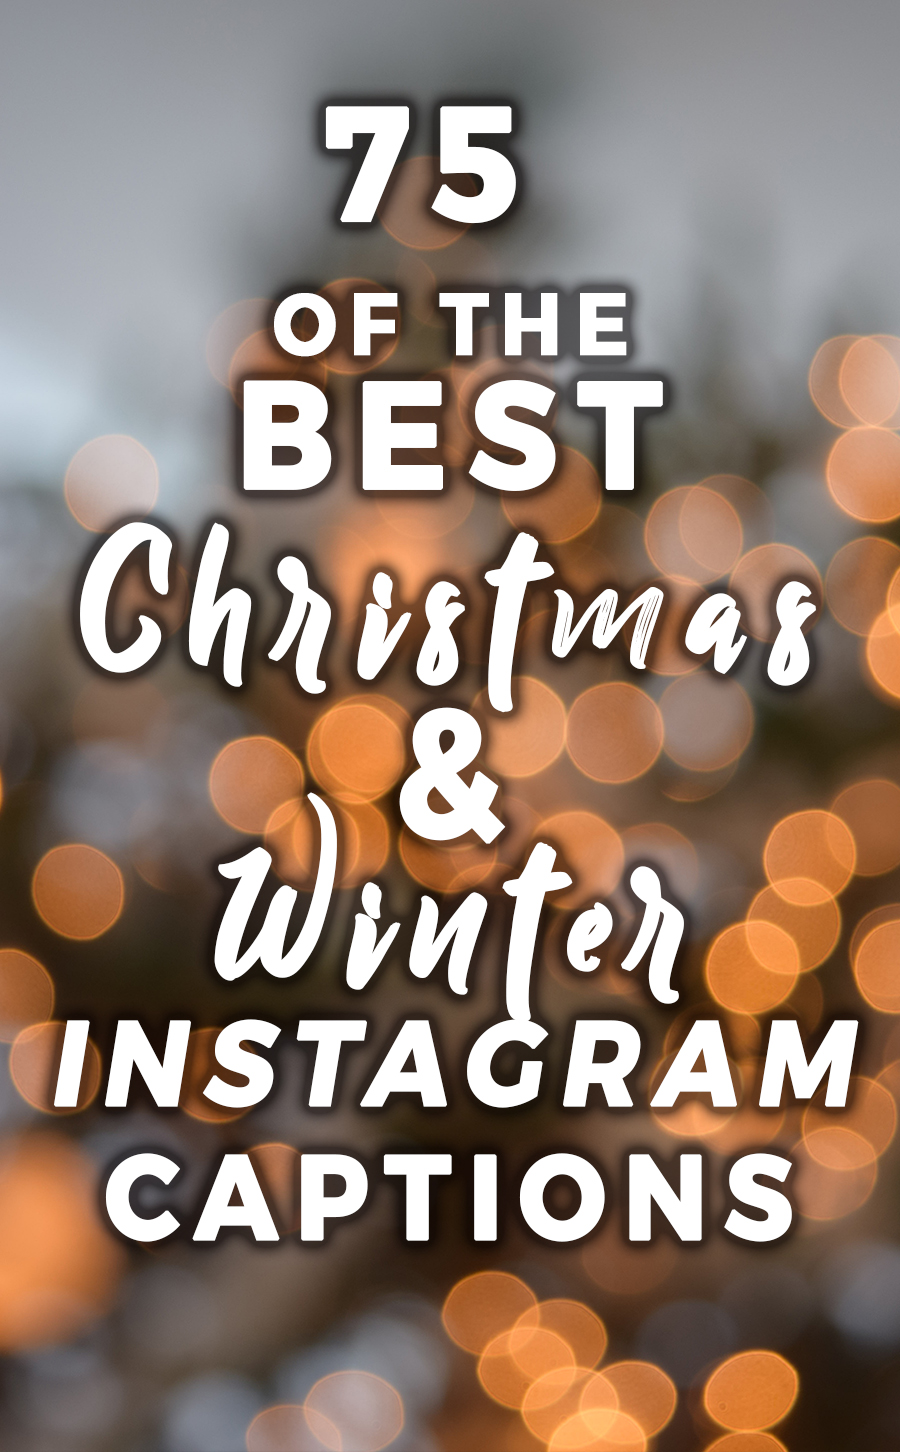 The Best Christmas Instagram Captions Helene In Between